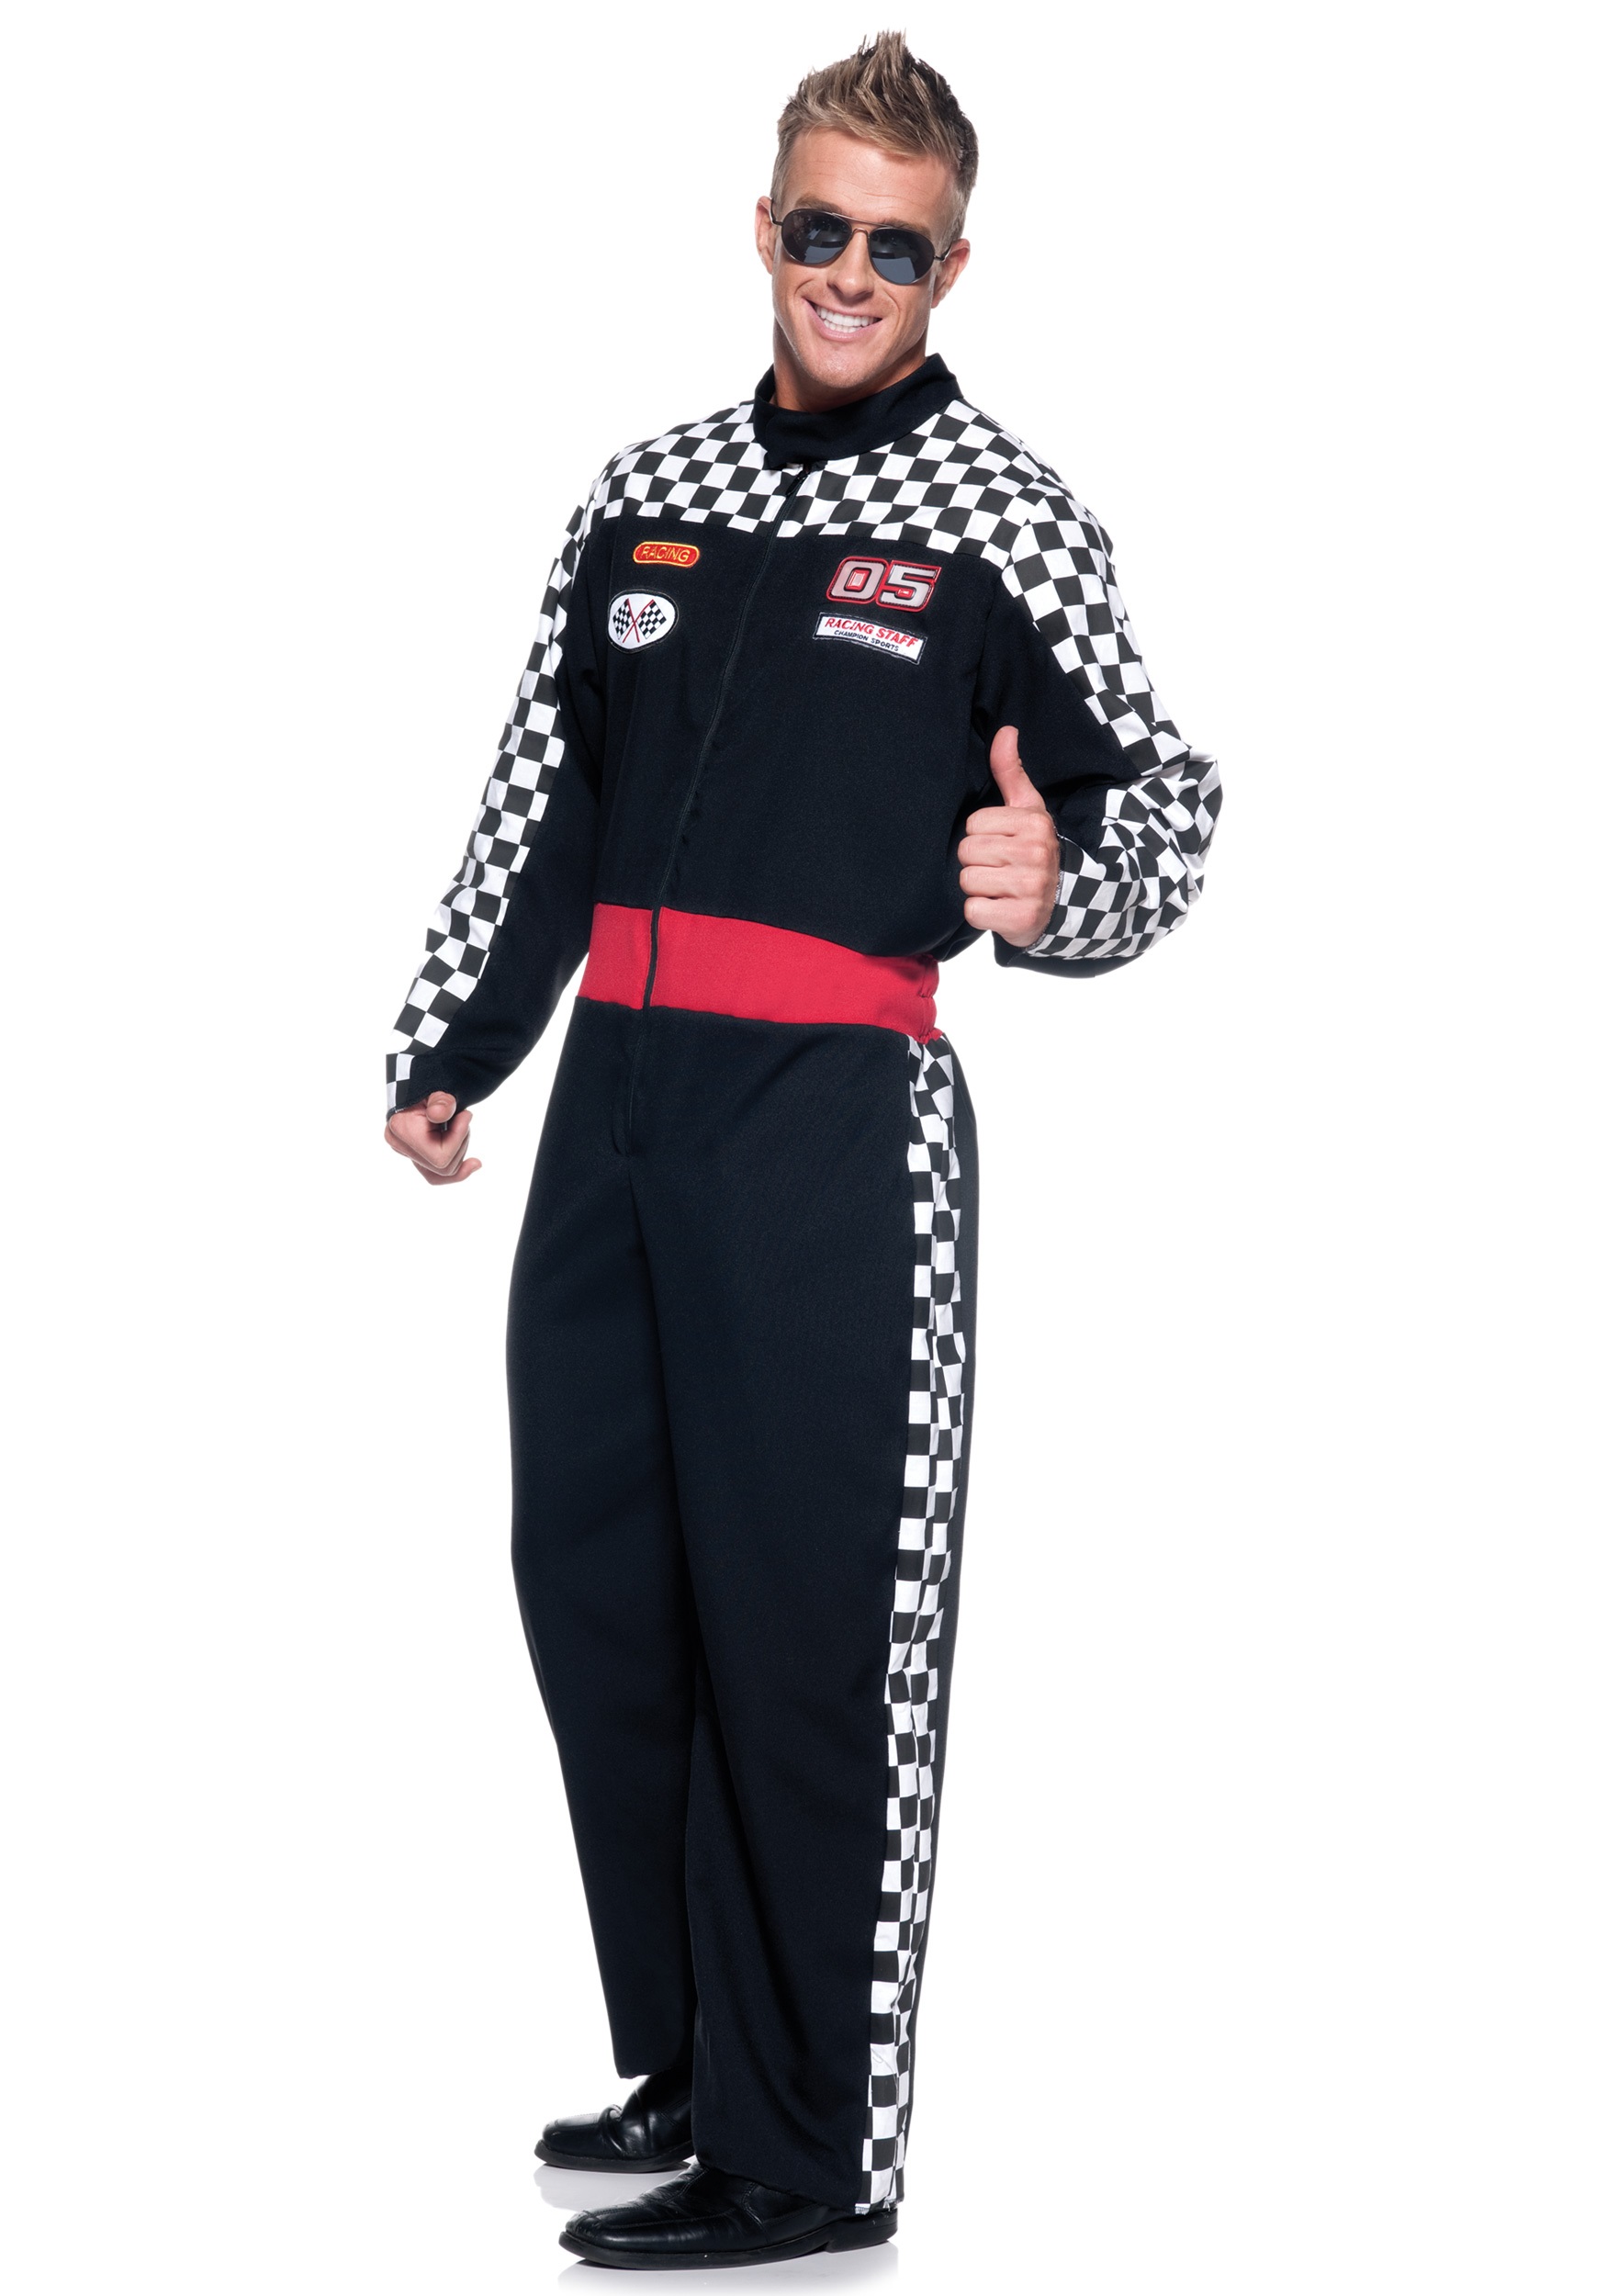 Plus Size Men's Race Car Driver Fancy Dress Costume 2X